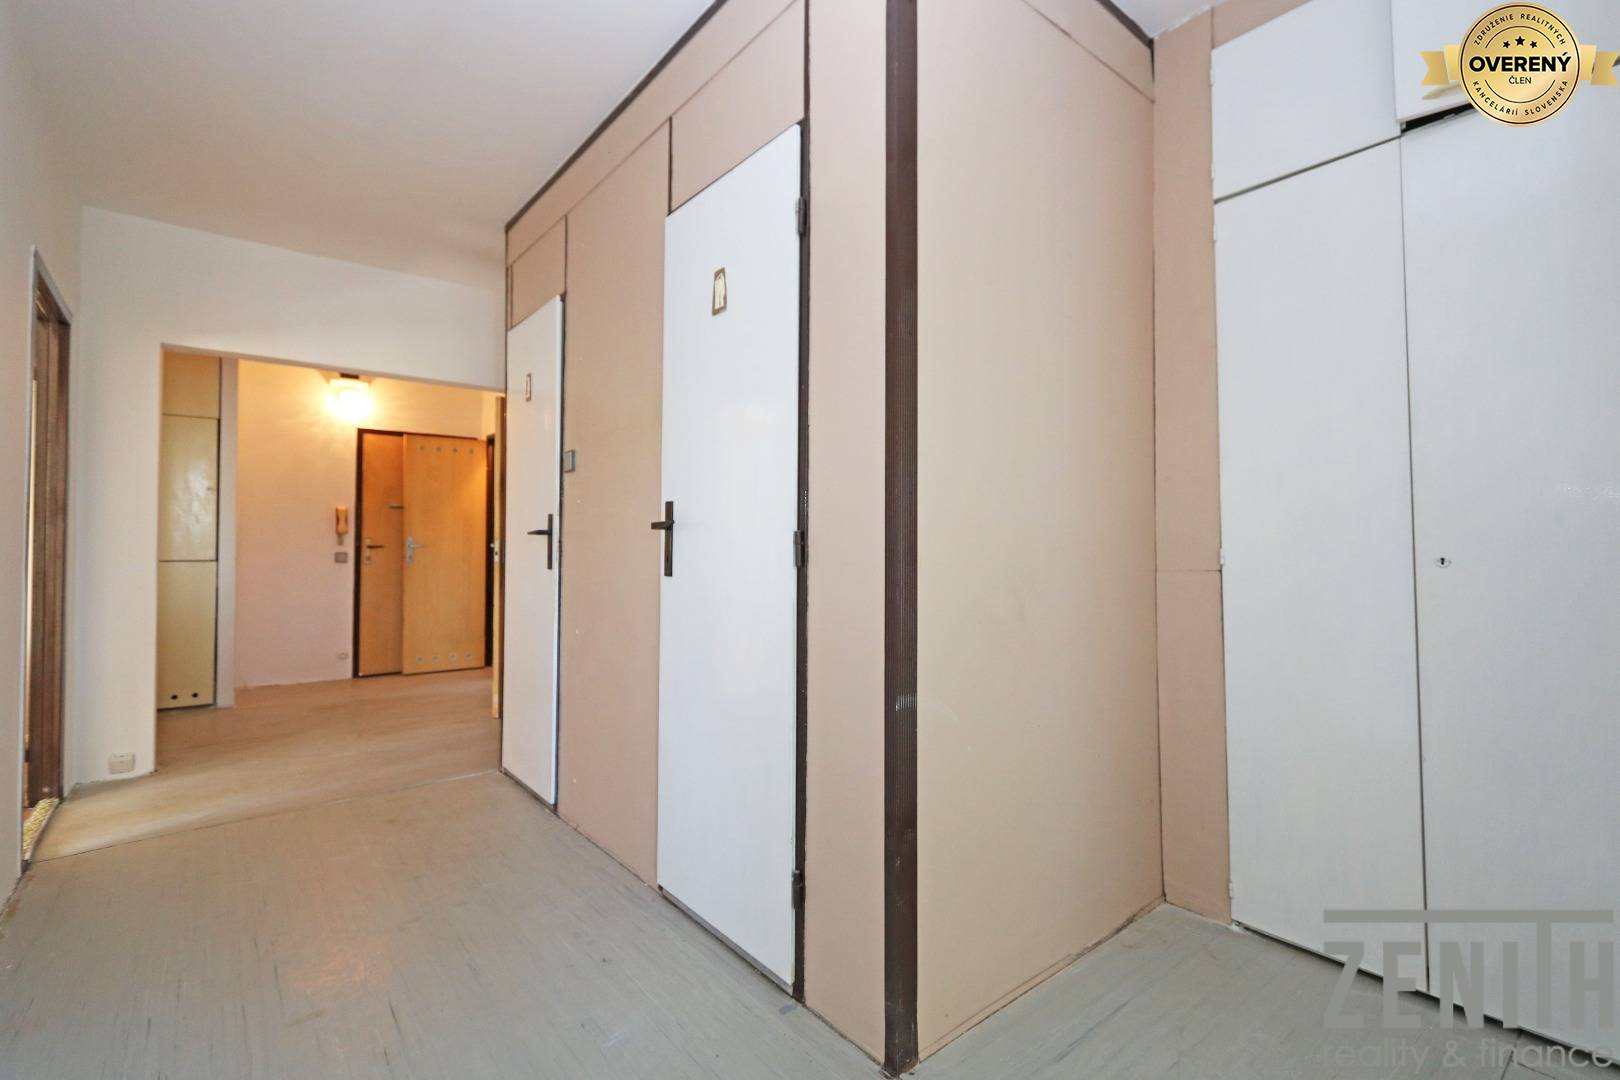 Sale Three bedroom apartment, Viestova, Myjava, Slovakia